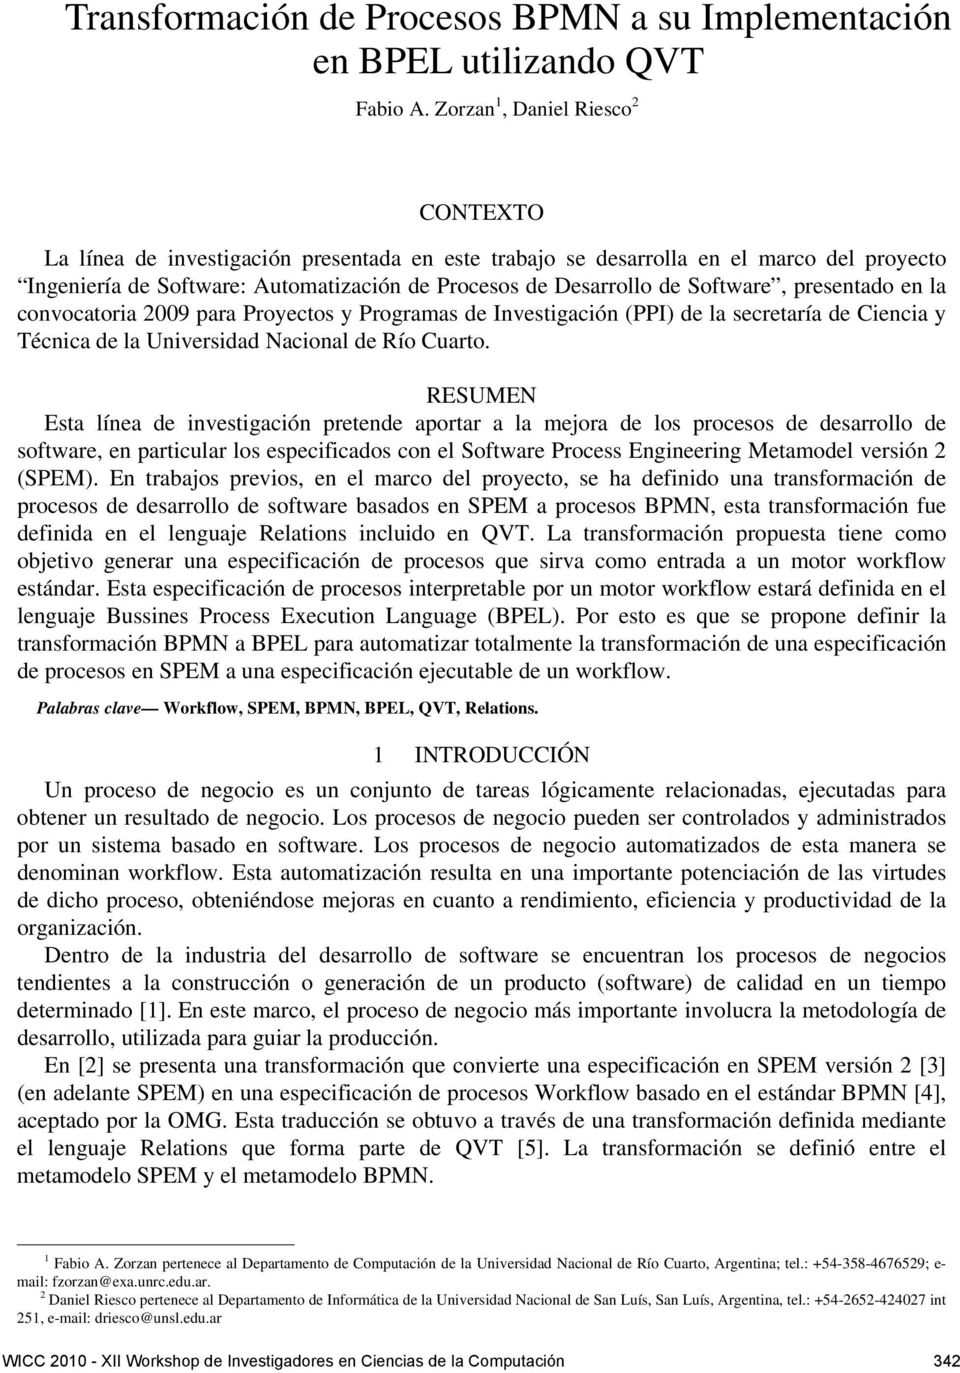 Software, presentado en la convocatoria 2009 para Proyectos y Programas de Investigación (PPI) de la secretaría de Ciencia y Técnica de la Universidad Nacional de Río Cuarto.